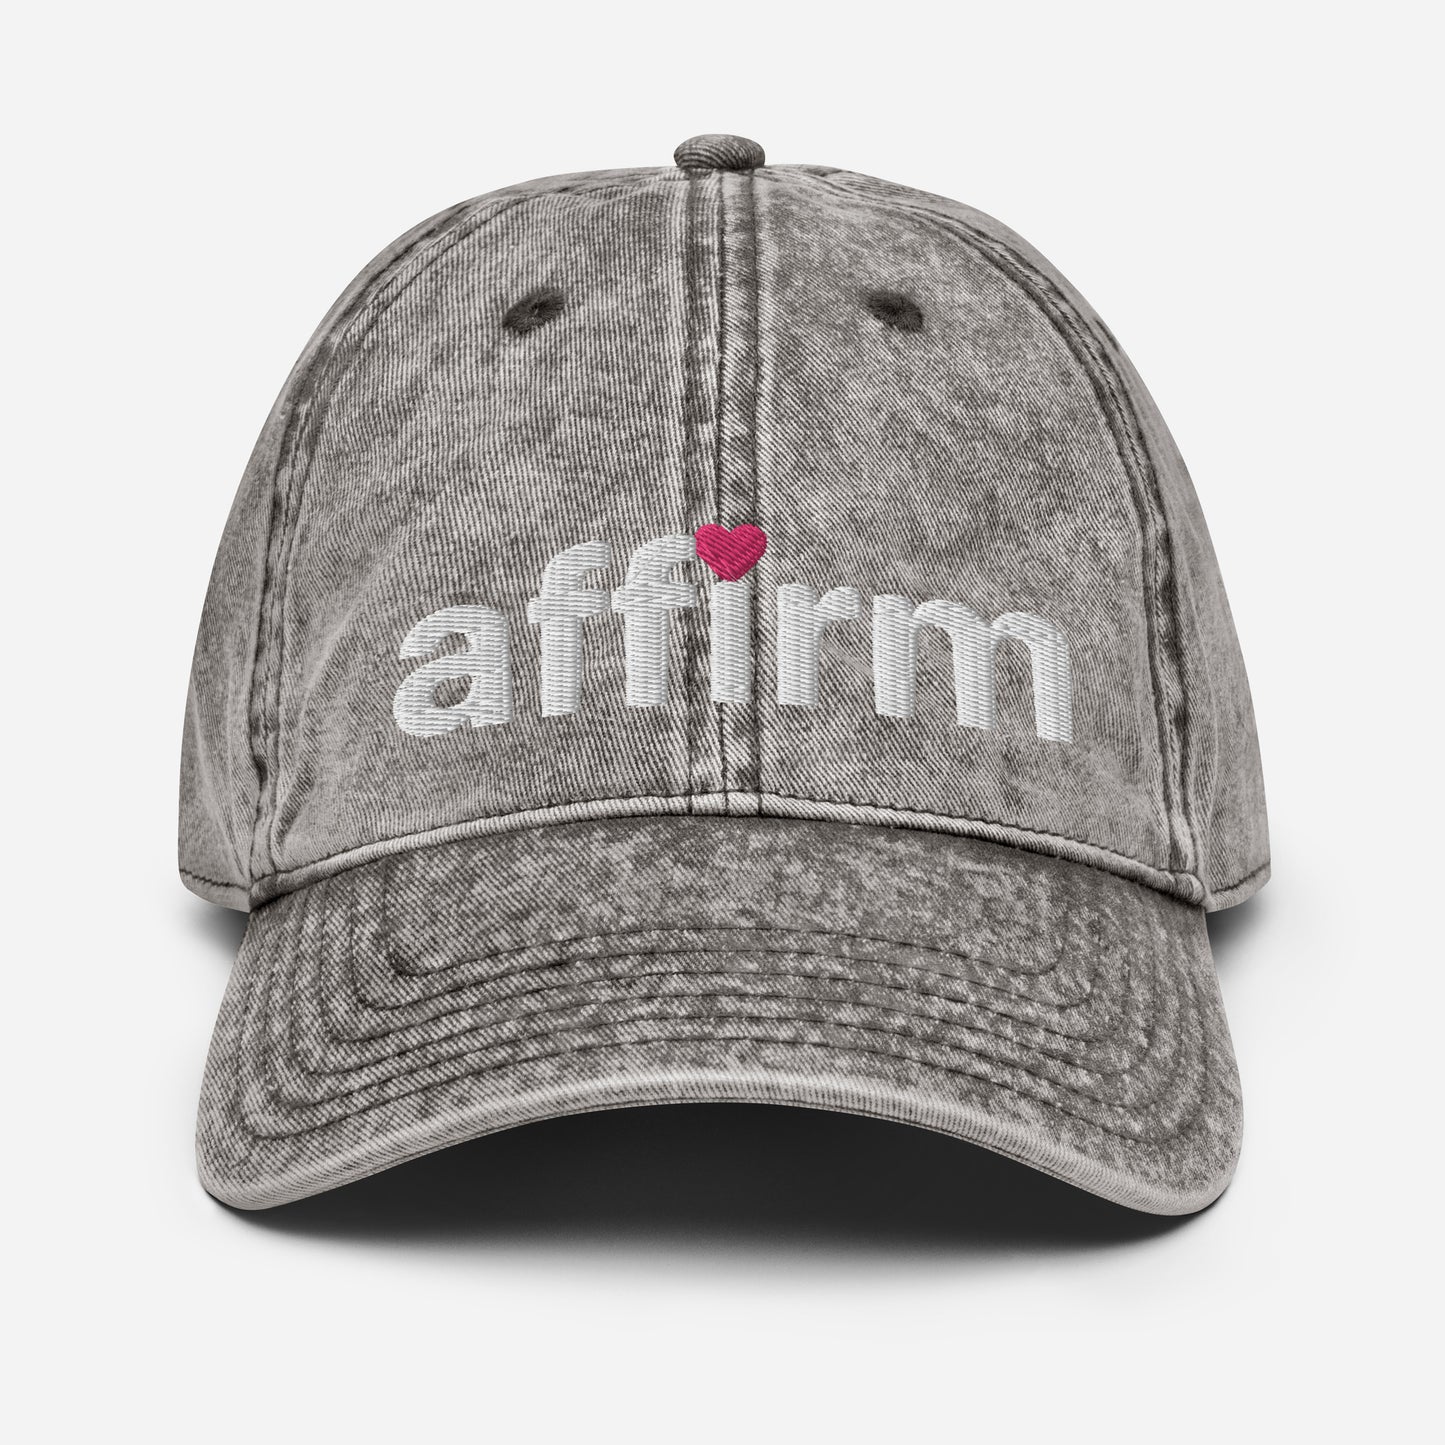 the classic affirm cap